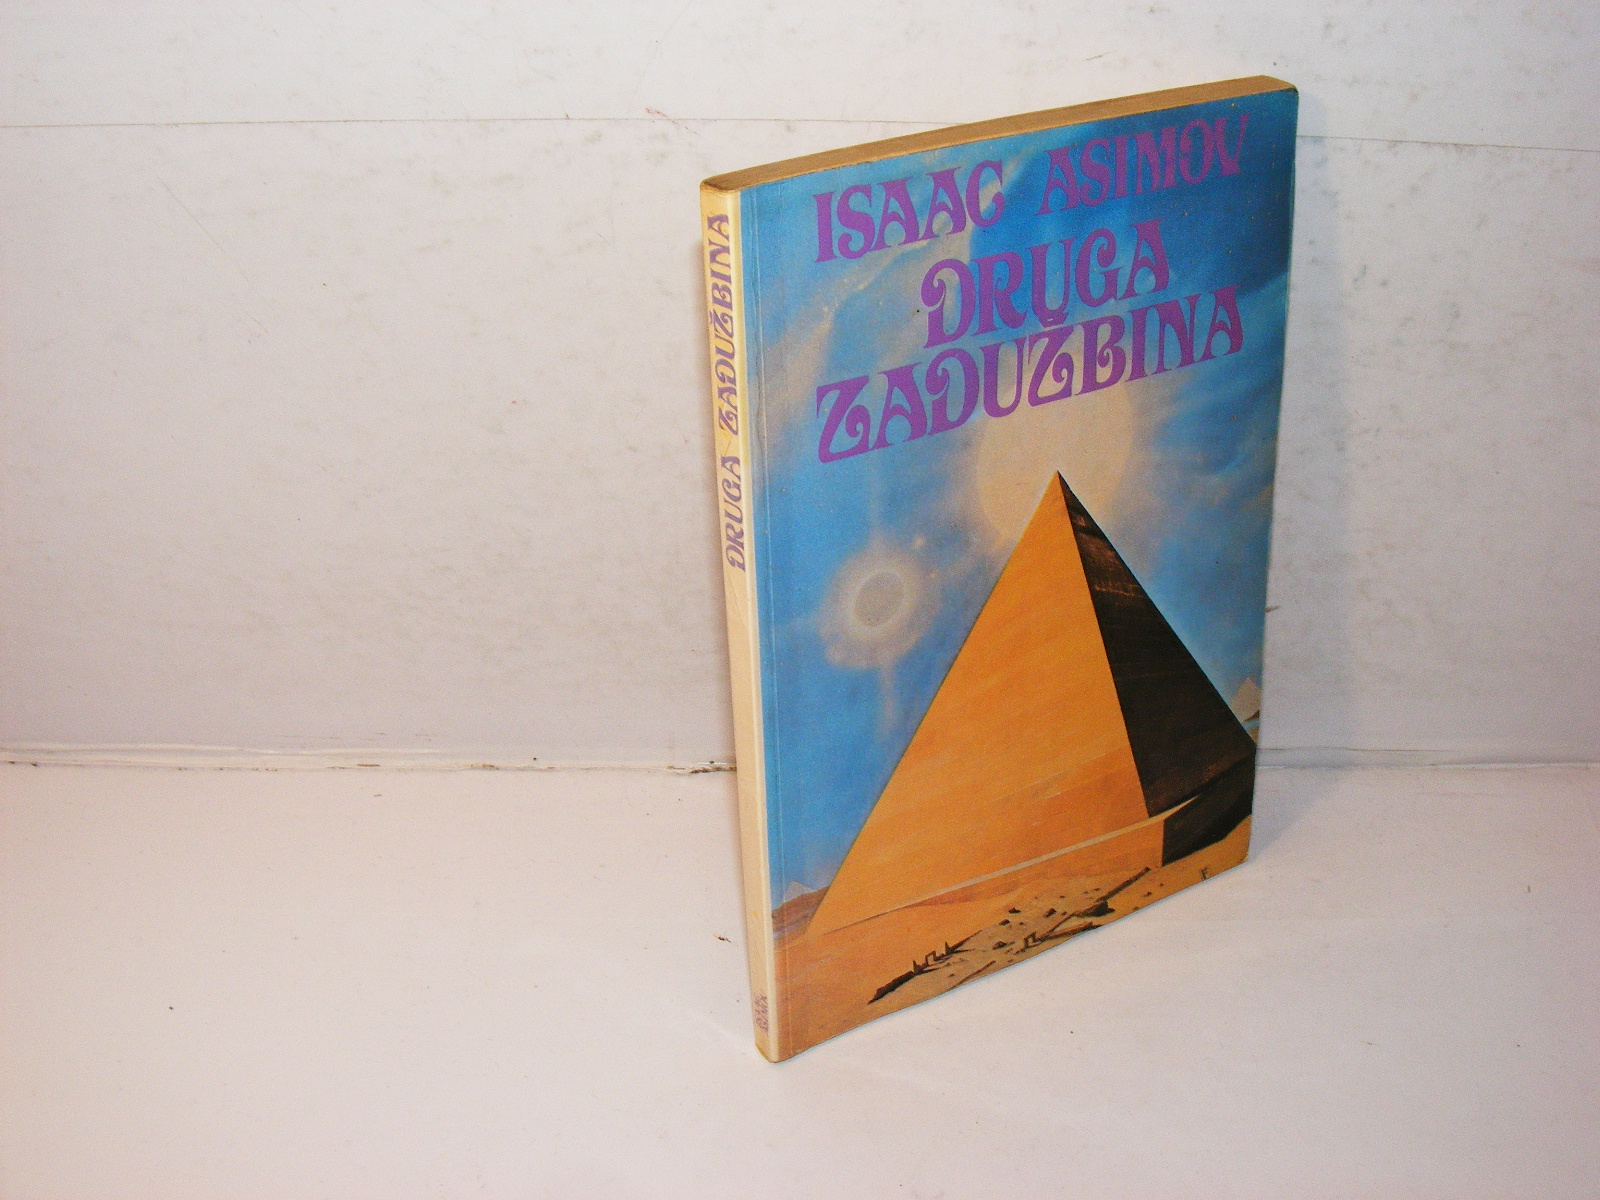 Druga zaduzbina - Isak Asimov, Biblioteka Polaris